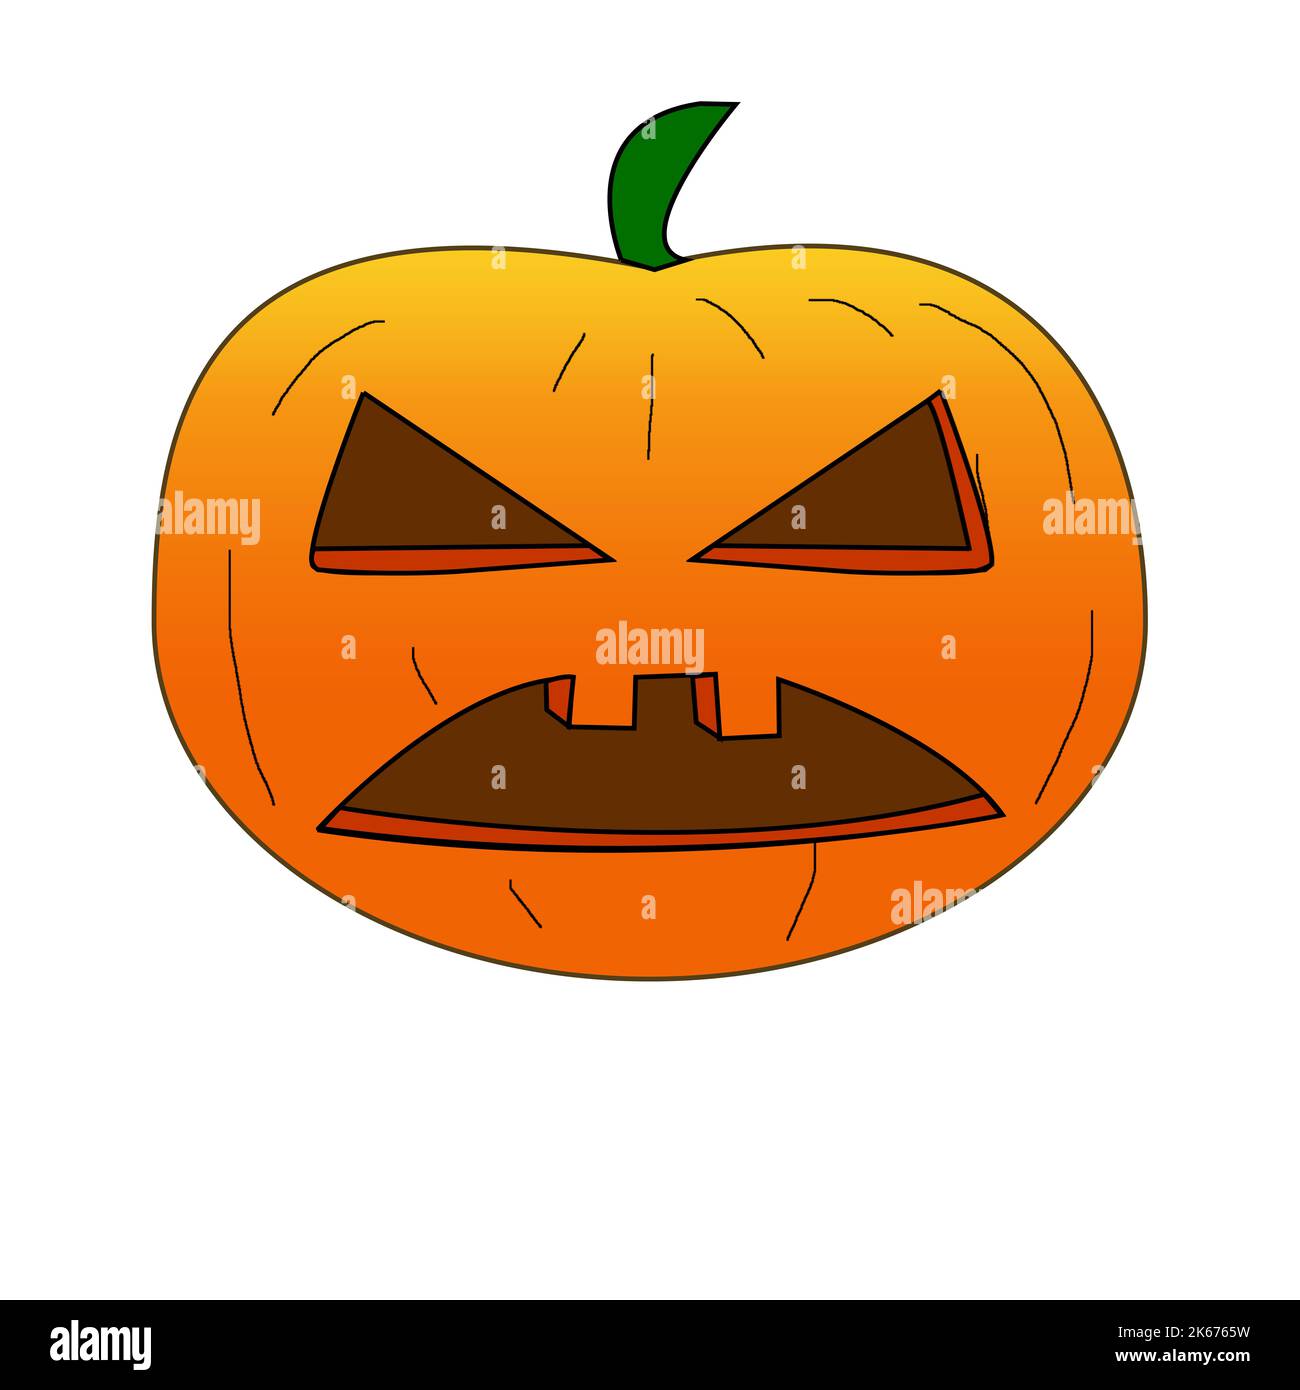 Halloween Pumpkin, jack-o-lantern, Illustration on whiten background Stock Photo